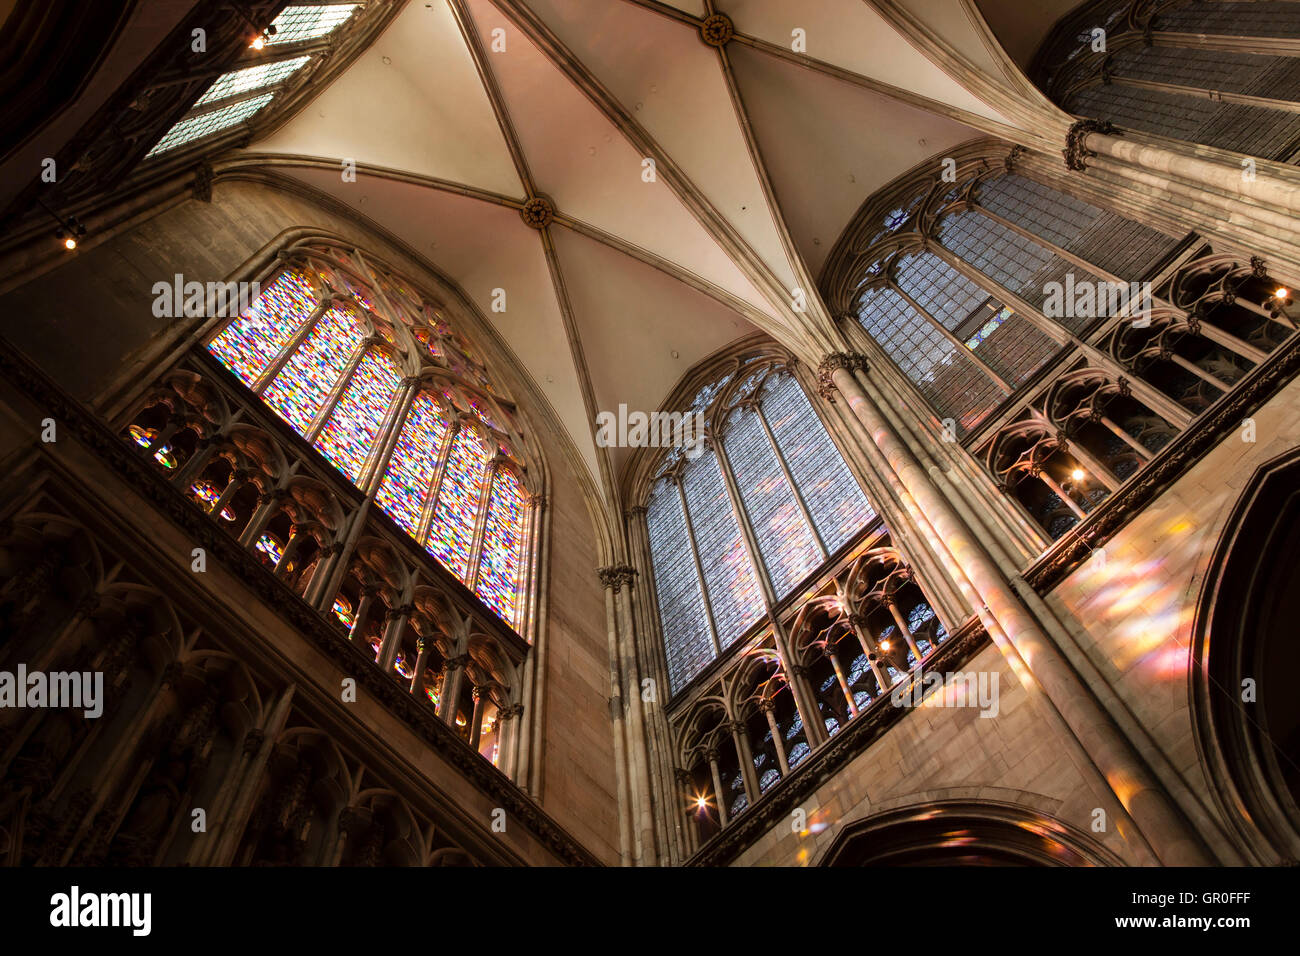 Germania, Colonia, all interno della cattedrale, la finestra dall'artista Gerhard Richter nel transetto meridionale. Foto Stock